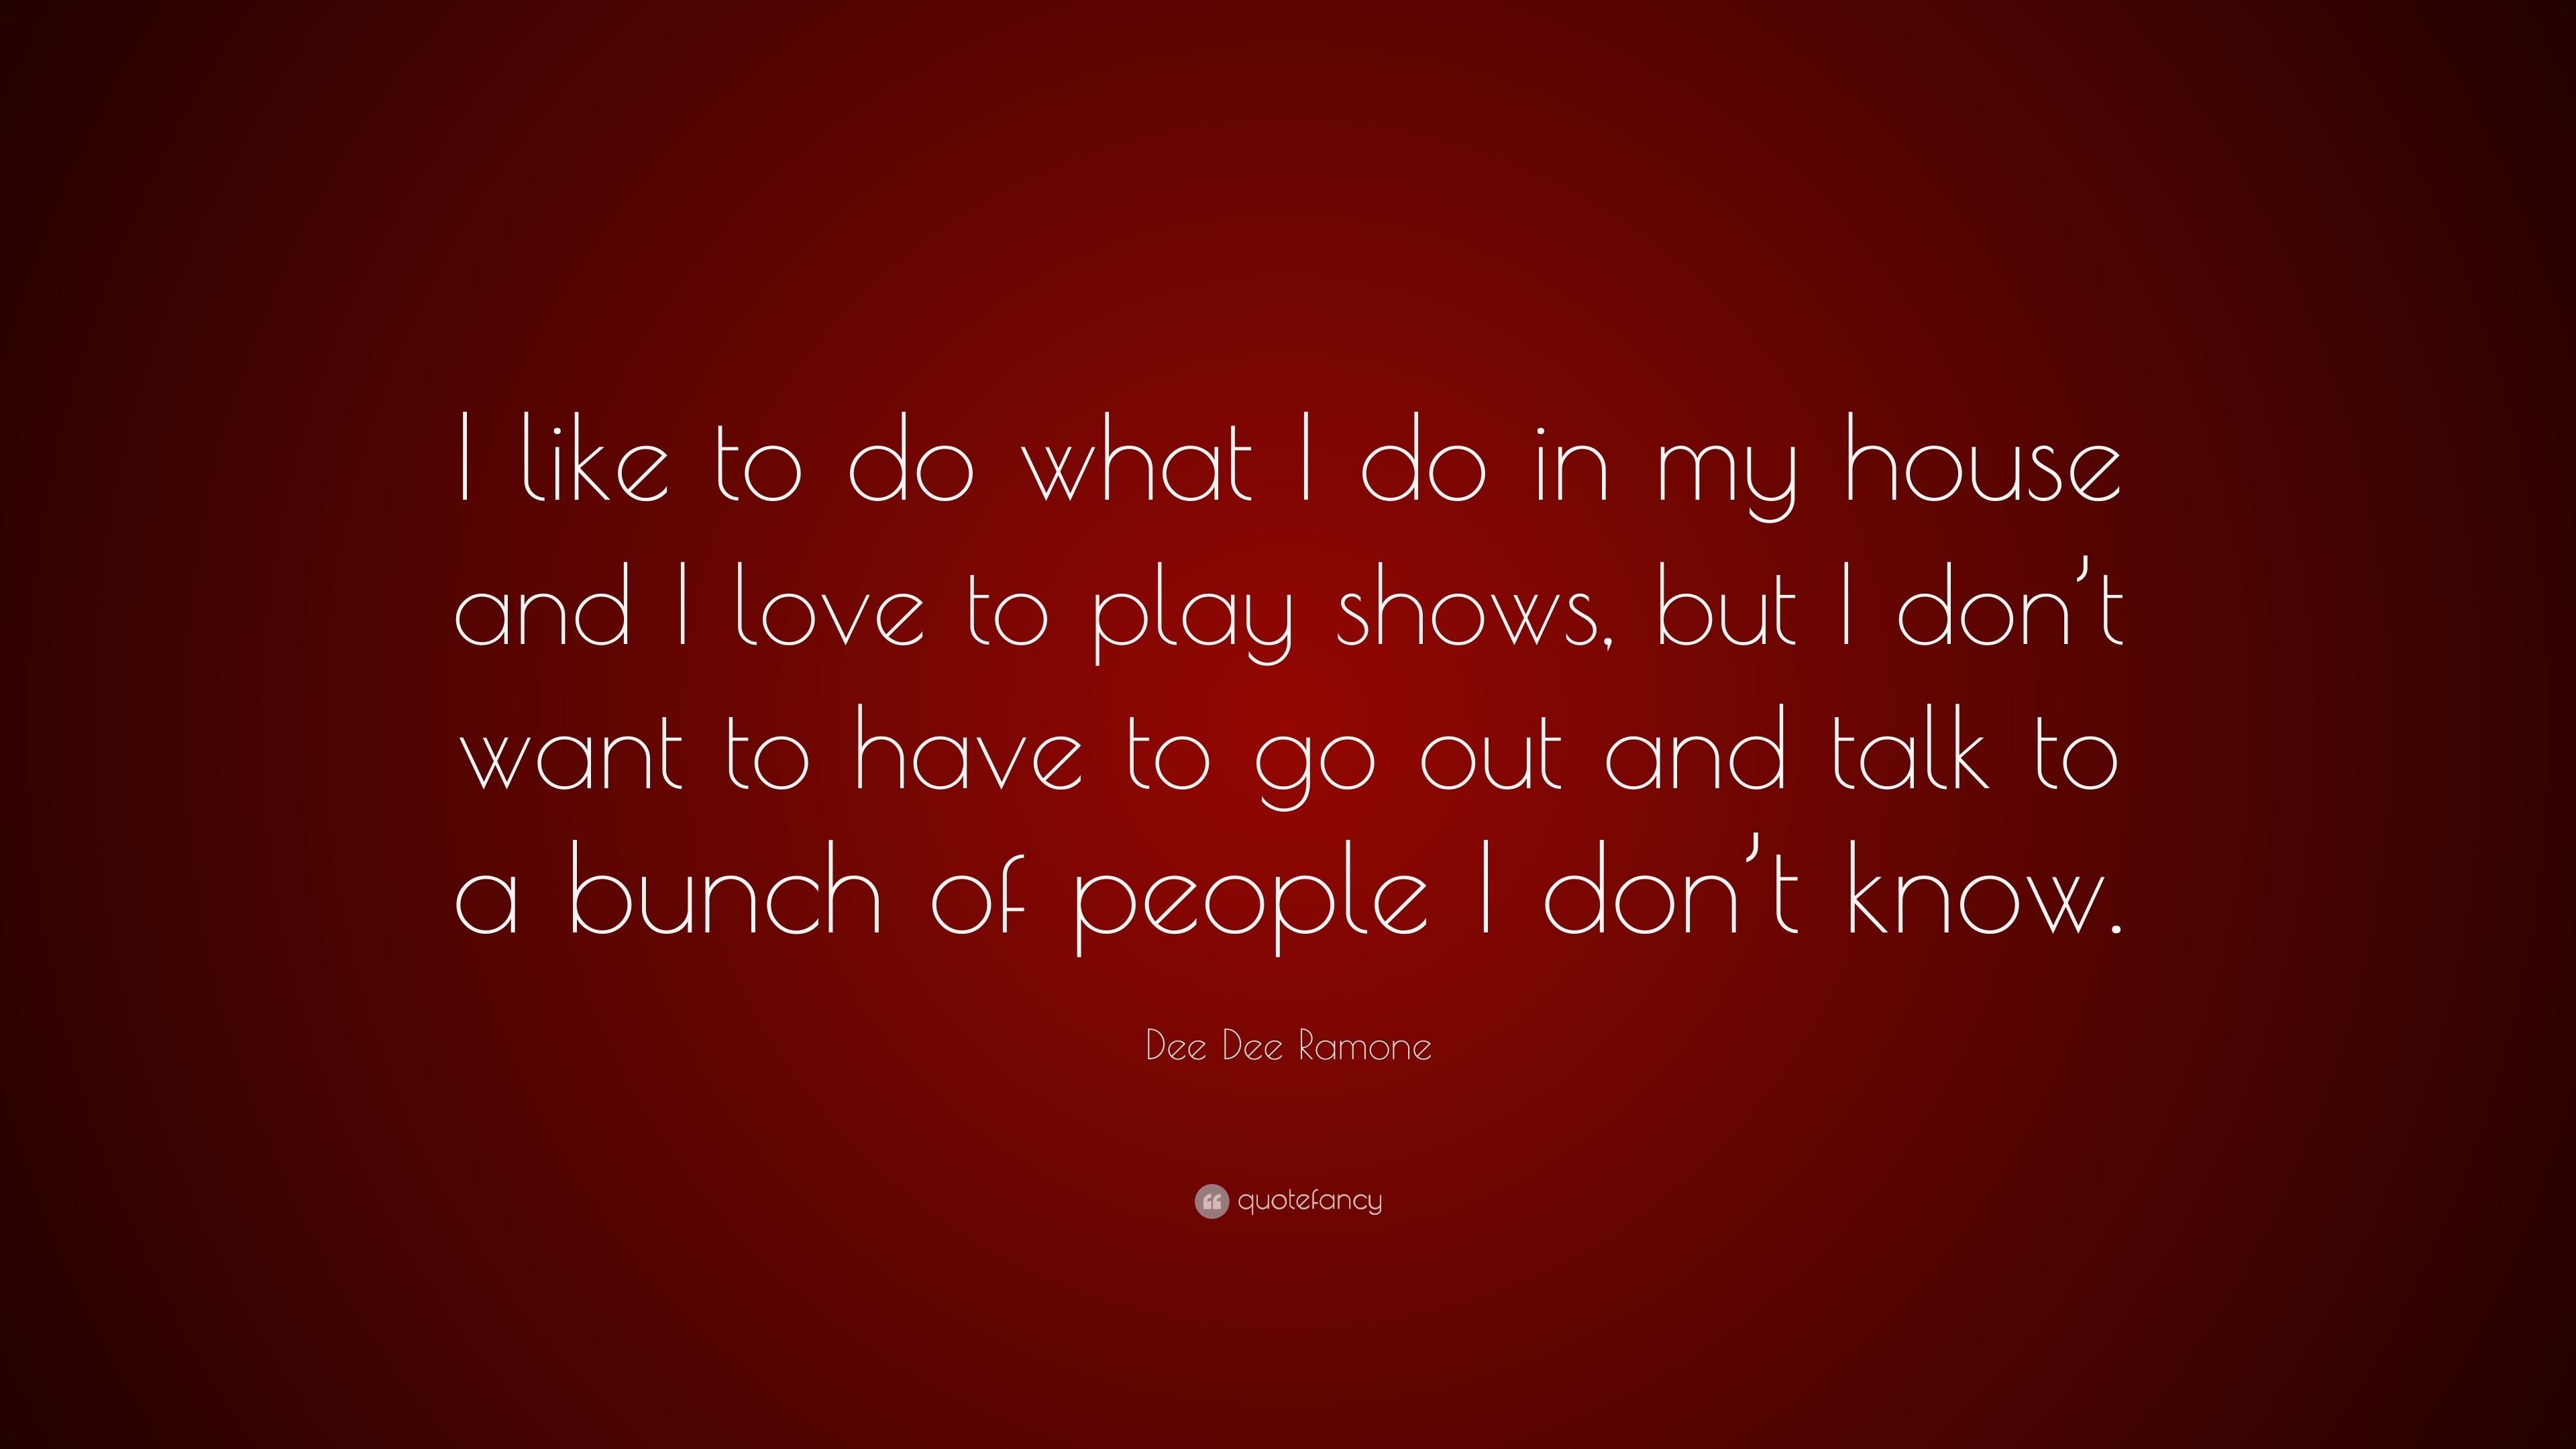 Dee Dee Ramone Quotes (28 wallpapers) - Quotefancy